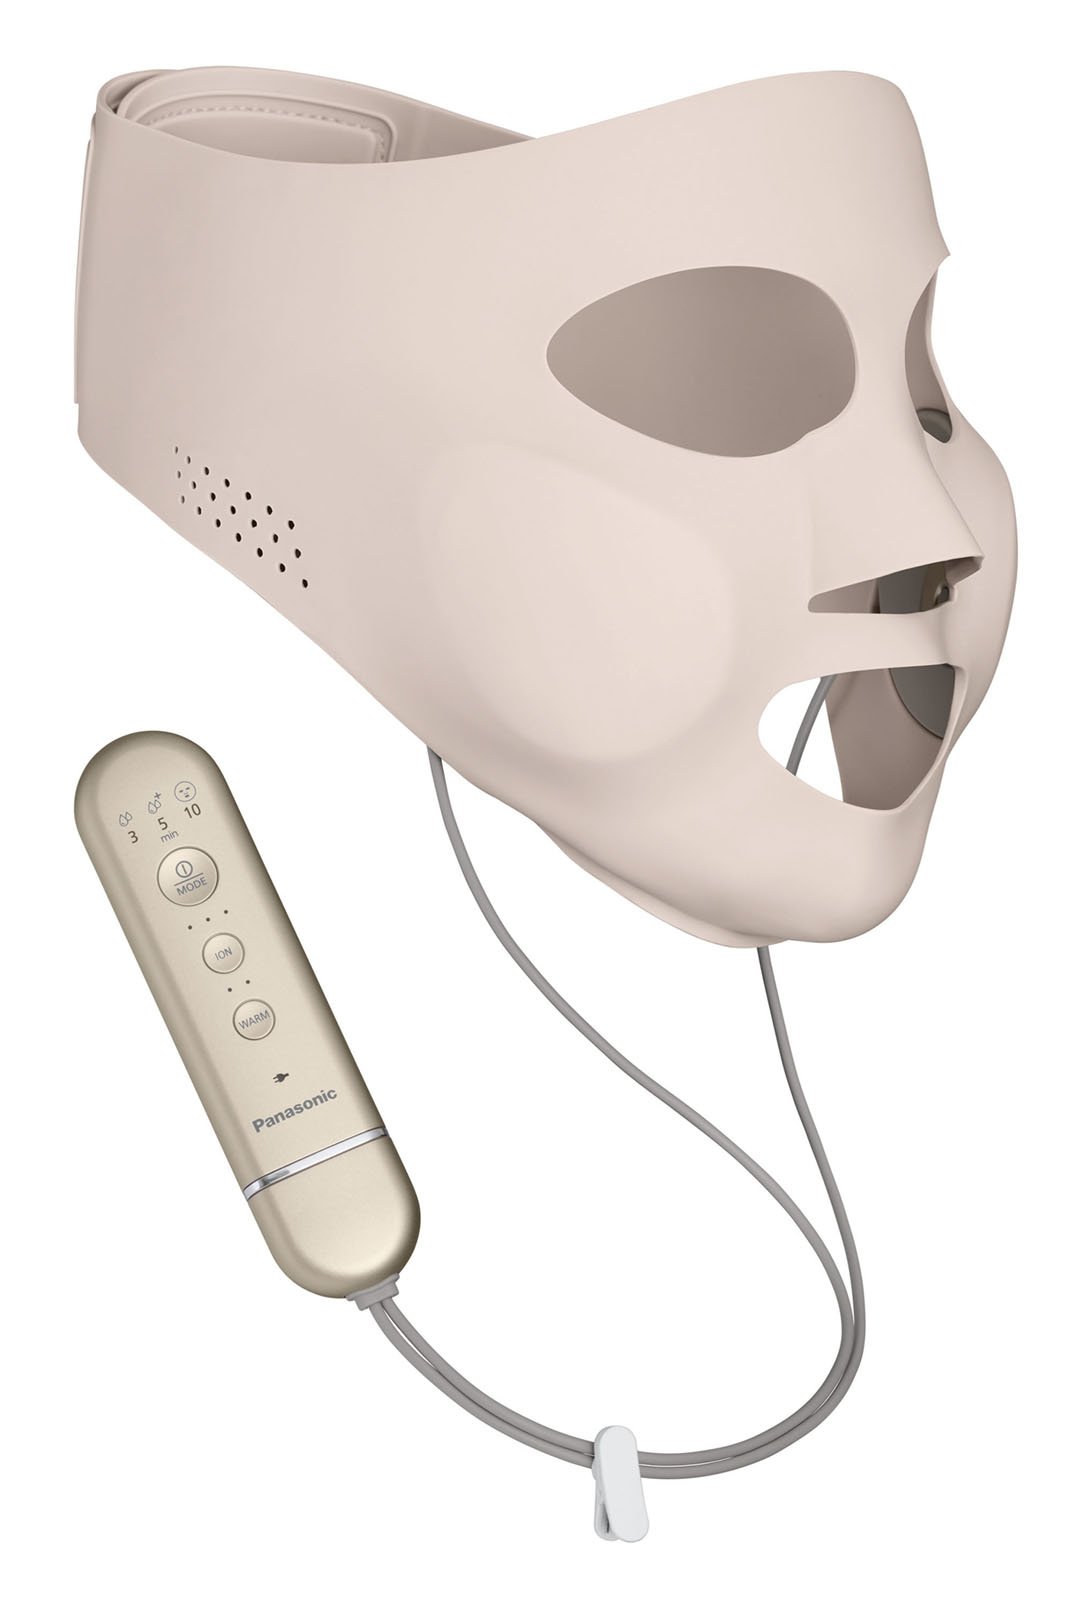 美容/健康 美容機器 マスク型イオン美顔器 イオンブースト EH-SM50を発売 | 個人向け商品 